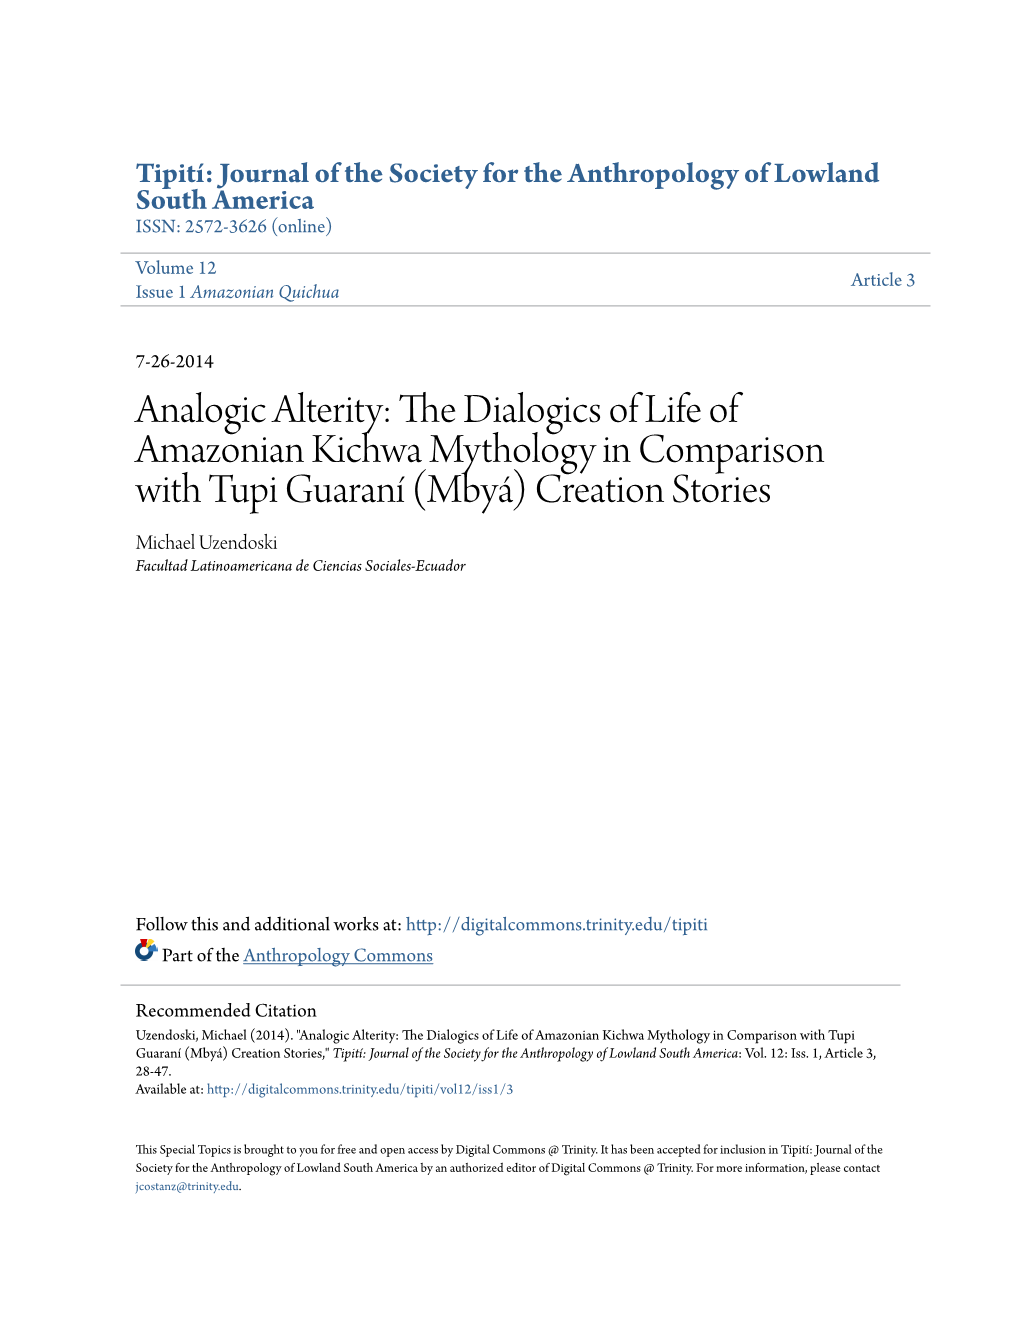 The Dialogics of Life of Amazonian Kichwa Mythology in Comparison